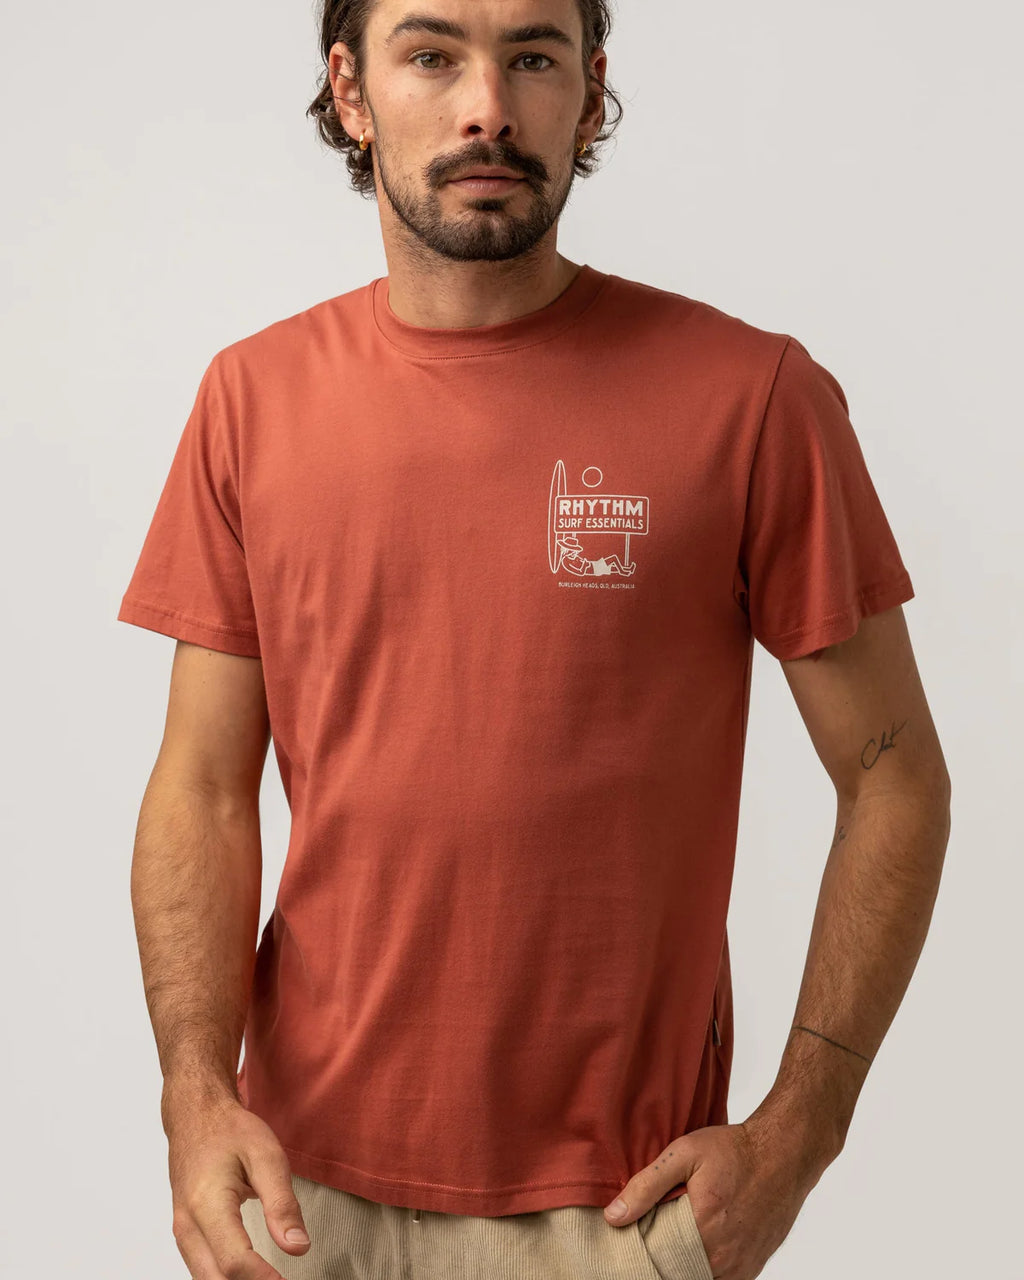 Wanderer T-Shirt